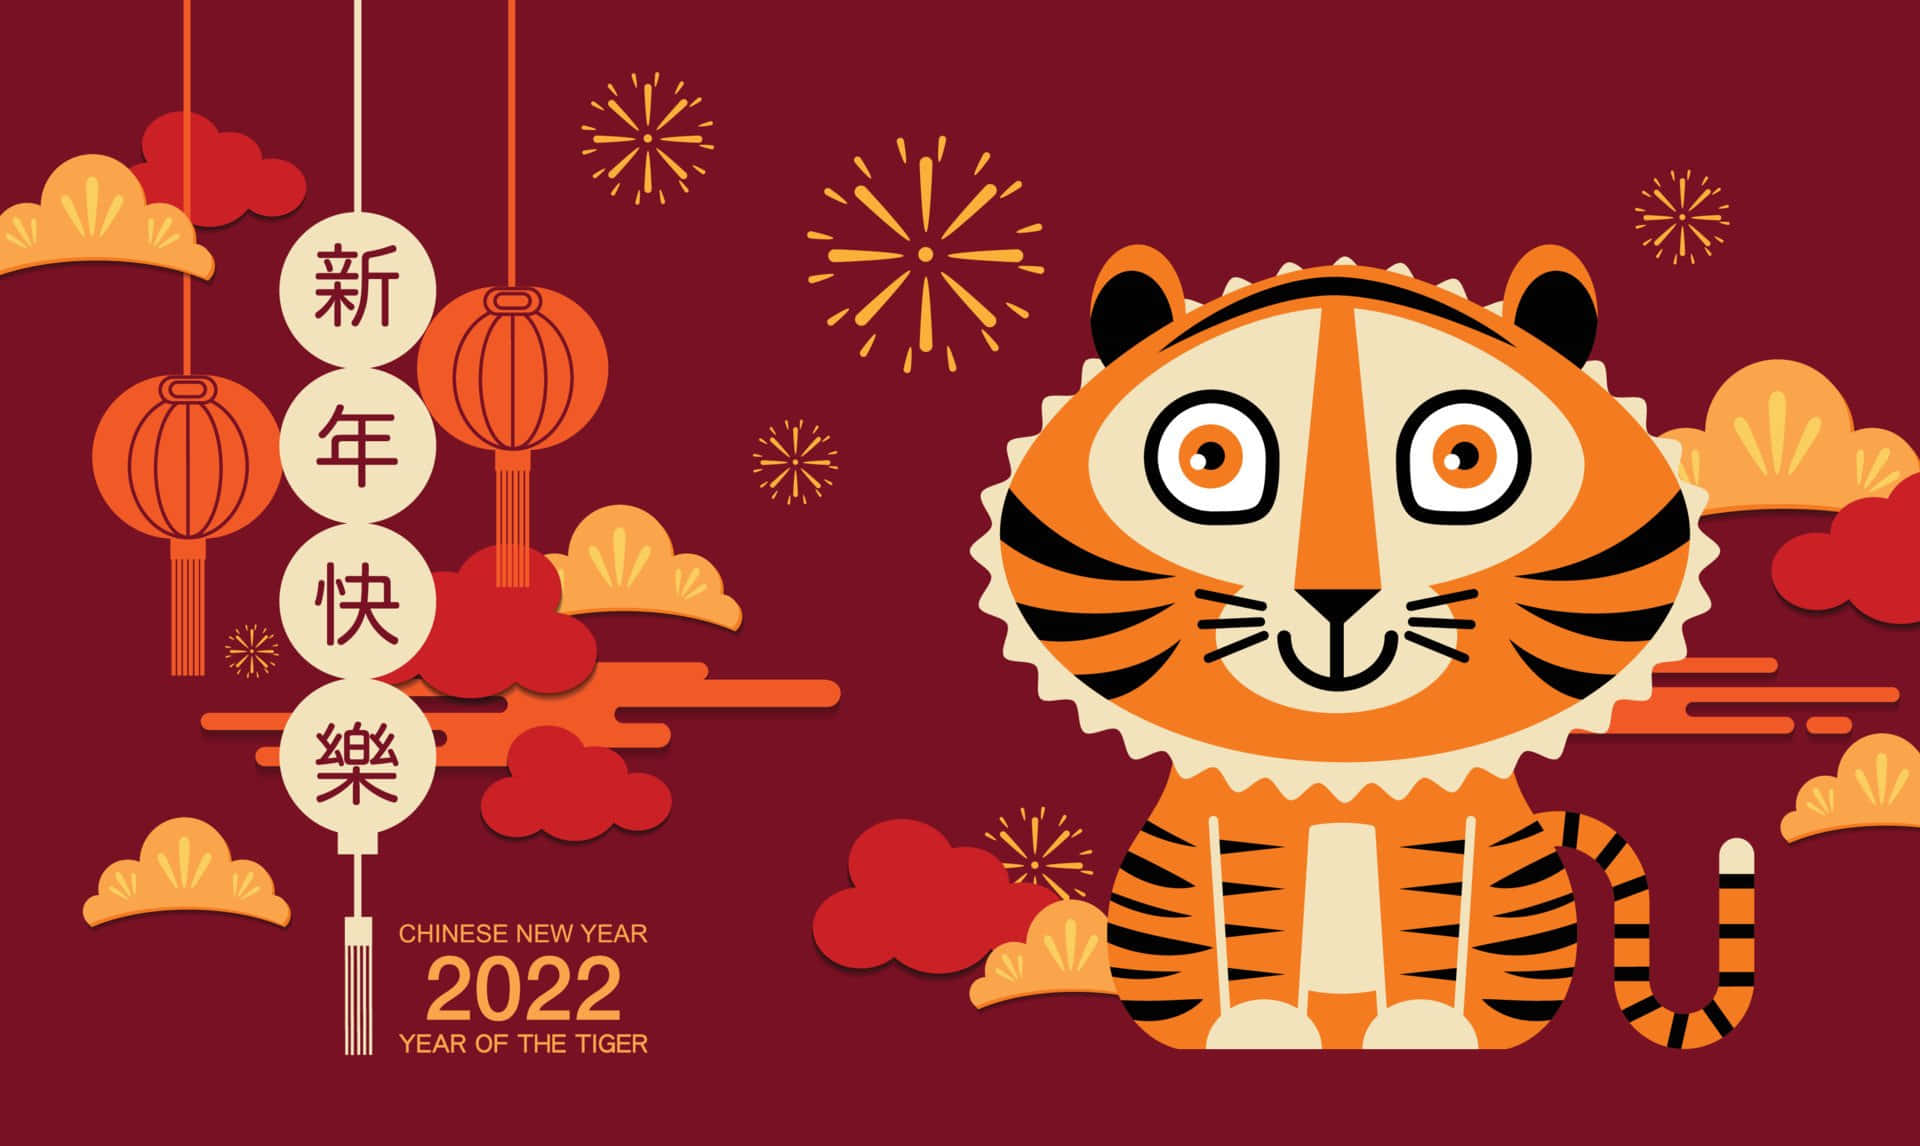 Feiernsie Mit Ihrer Familie Das Chinesische Neujahr 2022!